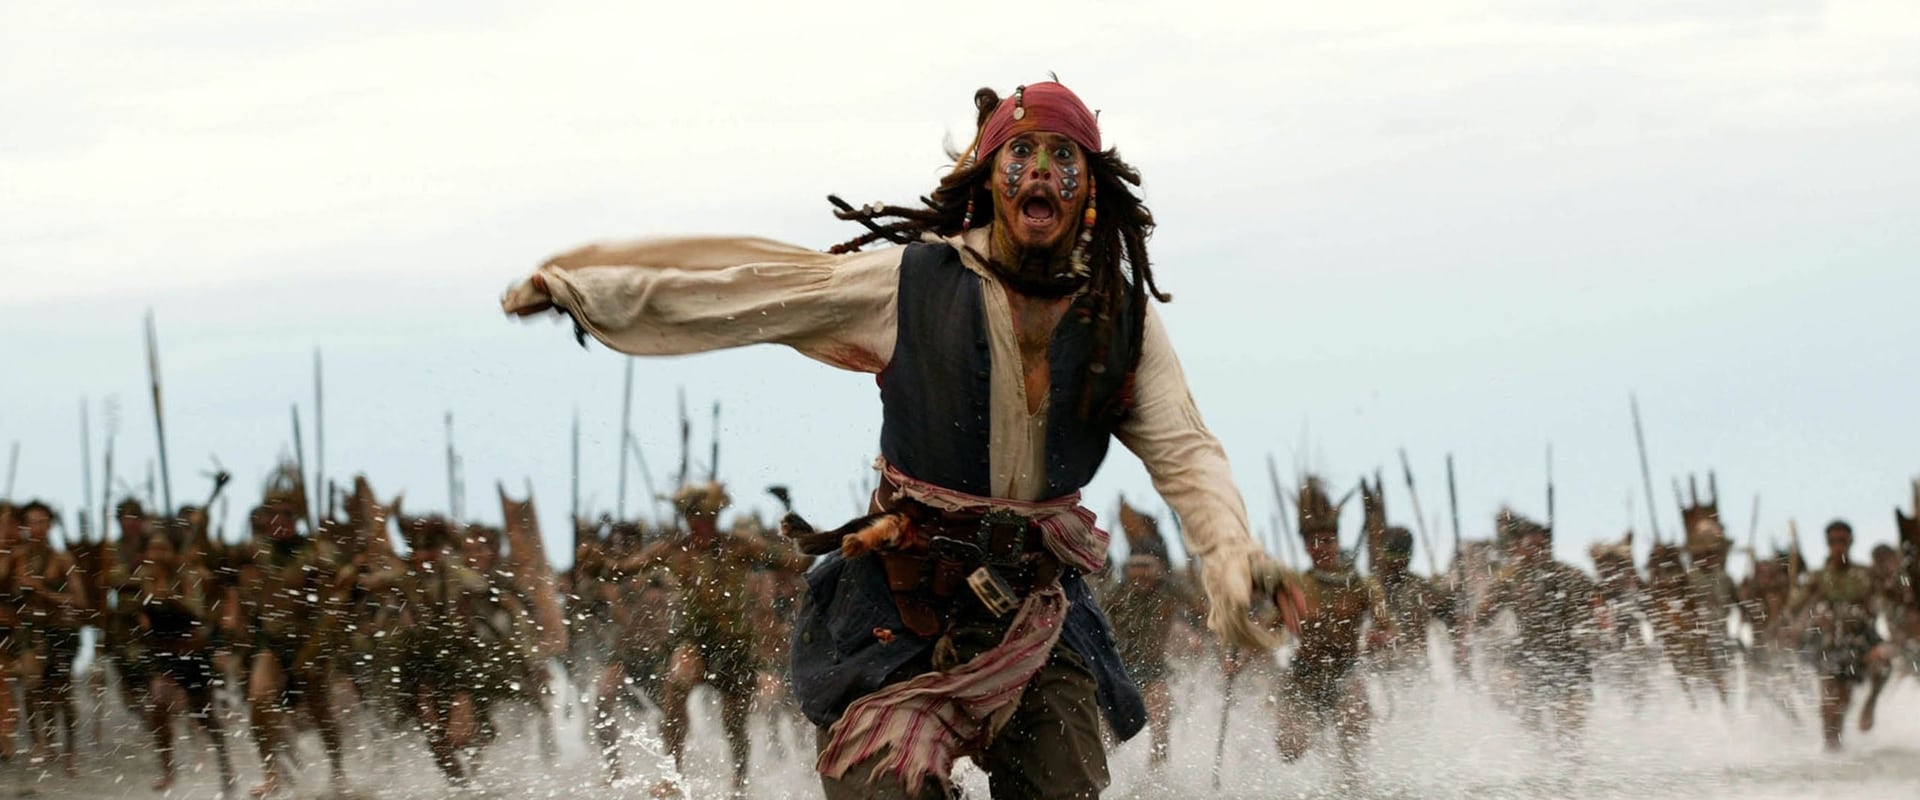 Piratas del Caribe: El cofre del hombre muerto